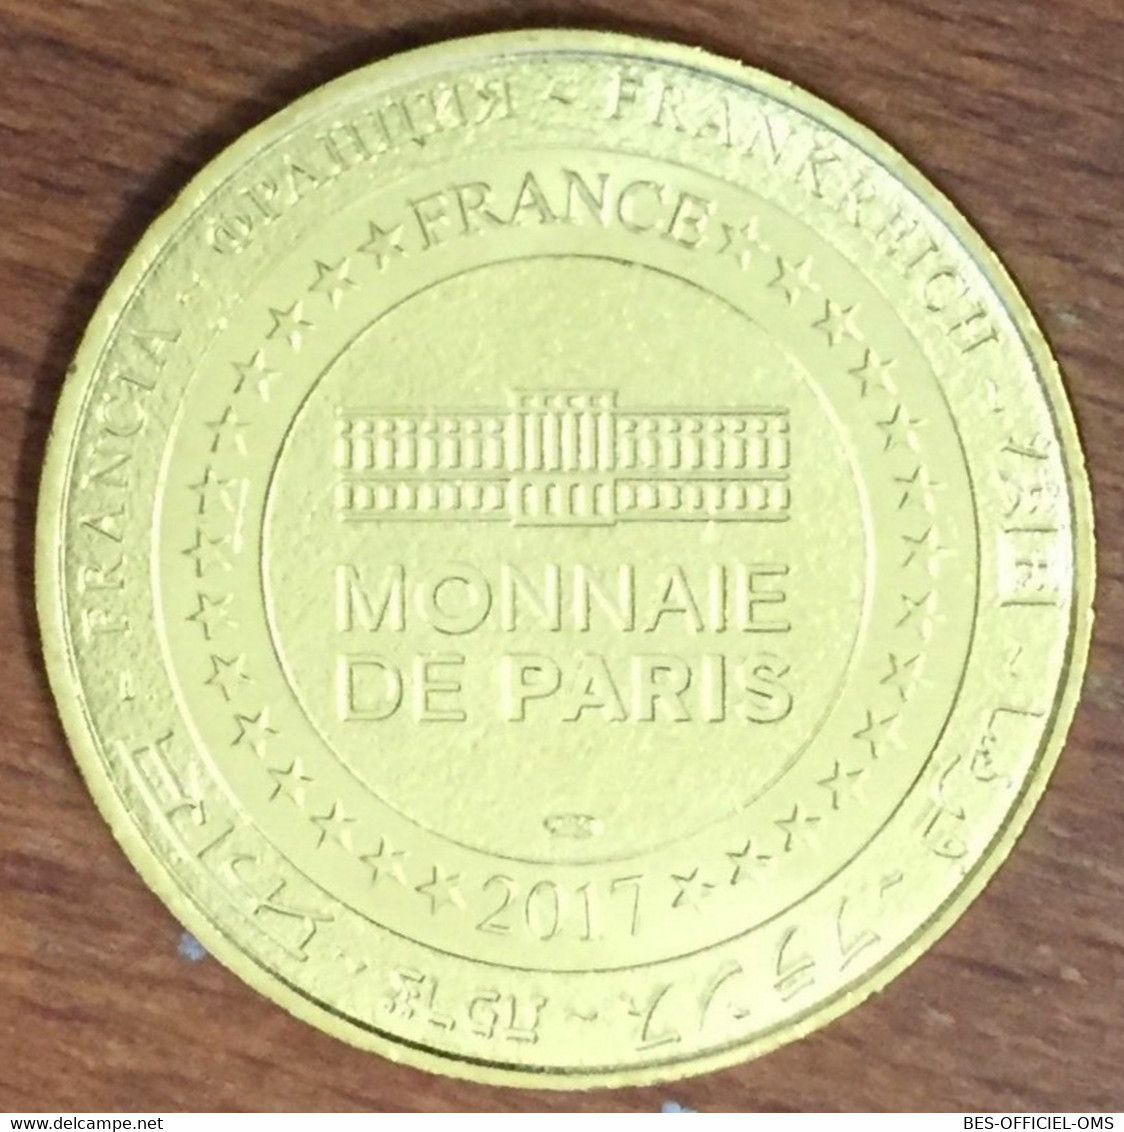 67 KINTZHEIM MONTAGNE DES SINGES N°11 ALSACE MDP 2017 MÉDAILLE MONNAIE DE PARIS JETON TOURISTIQUE TOKEN MEDAL COIN - 2017